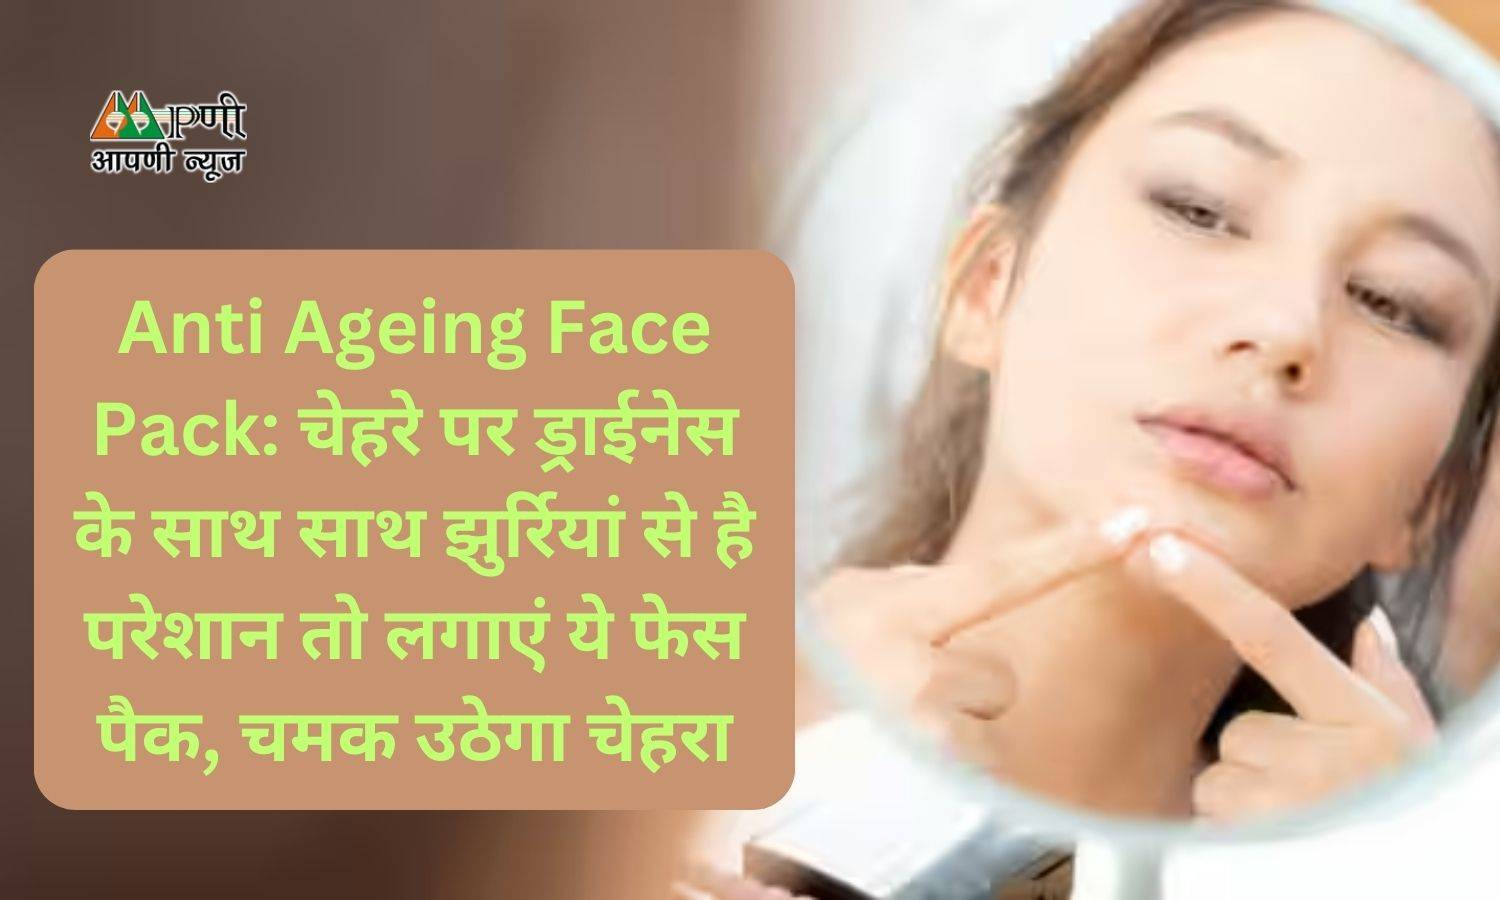 Anti Ageing Face Pack: चेहरे पर ड्राईनेस के साथ साथ झुर्रियां से है परेशान तो लगाएं ये फेस पैक, चमक उठेगा चेहरा